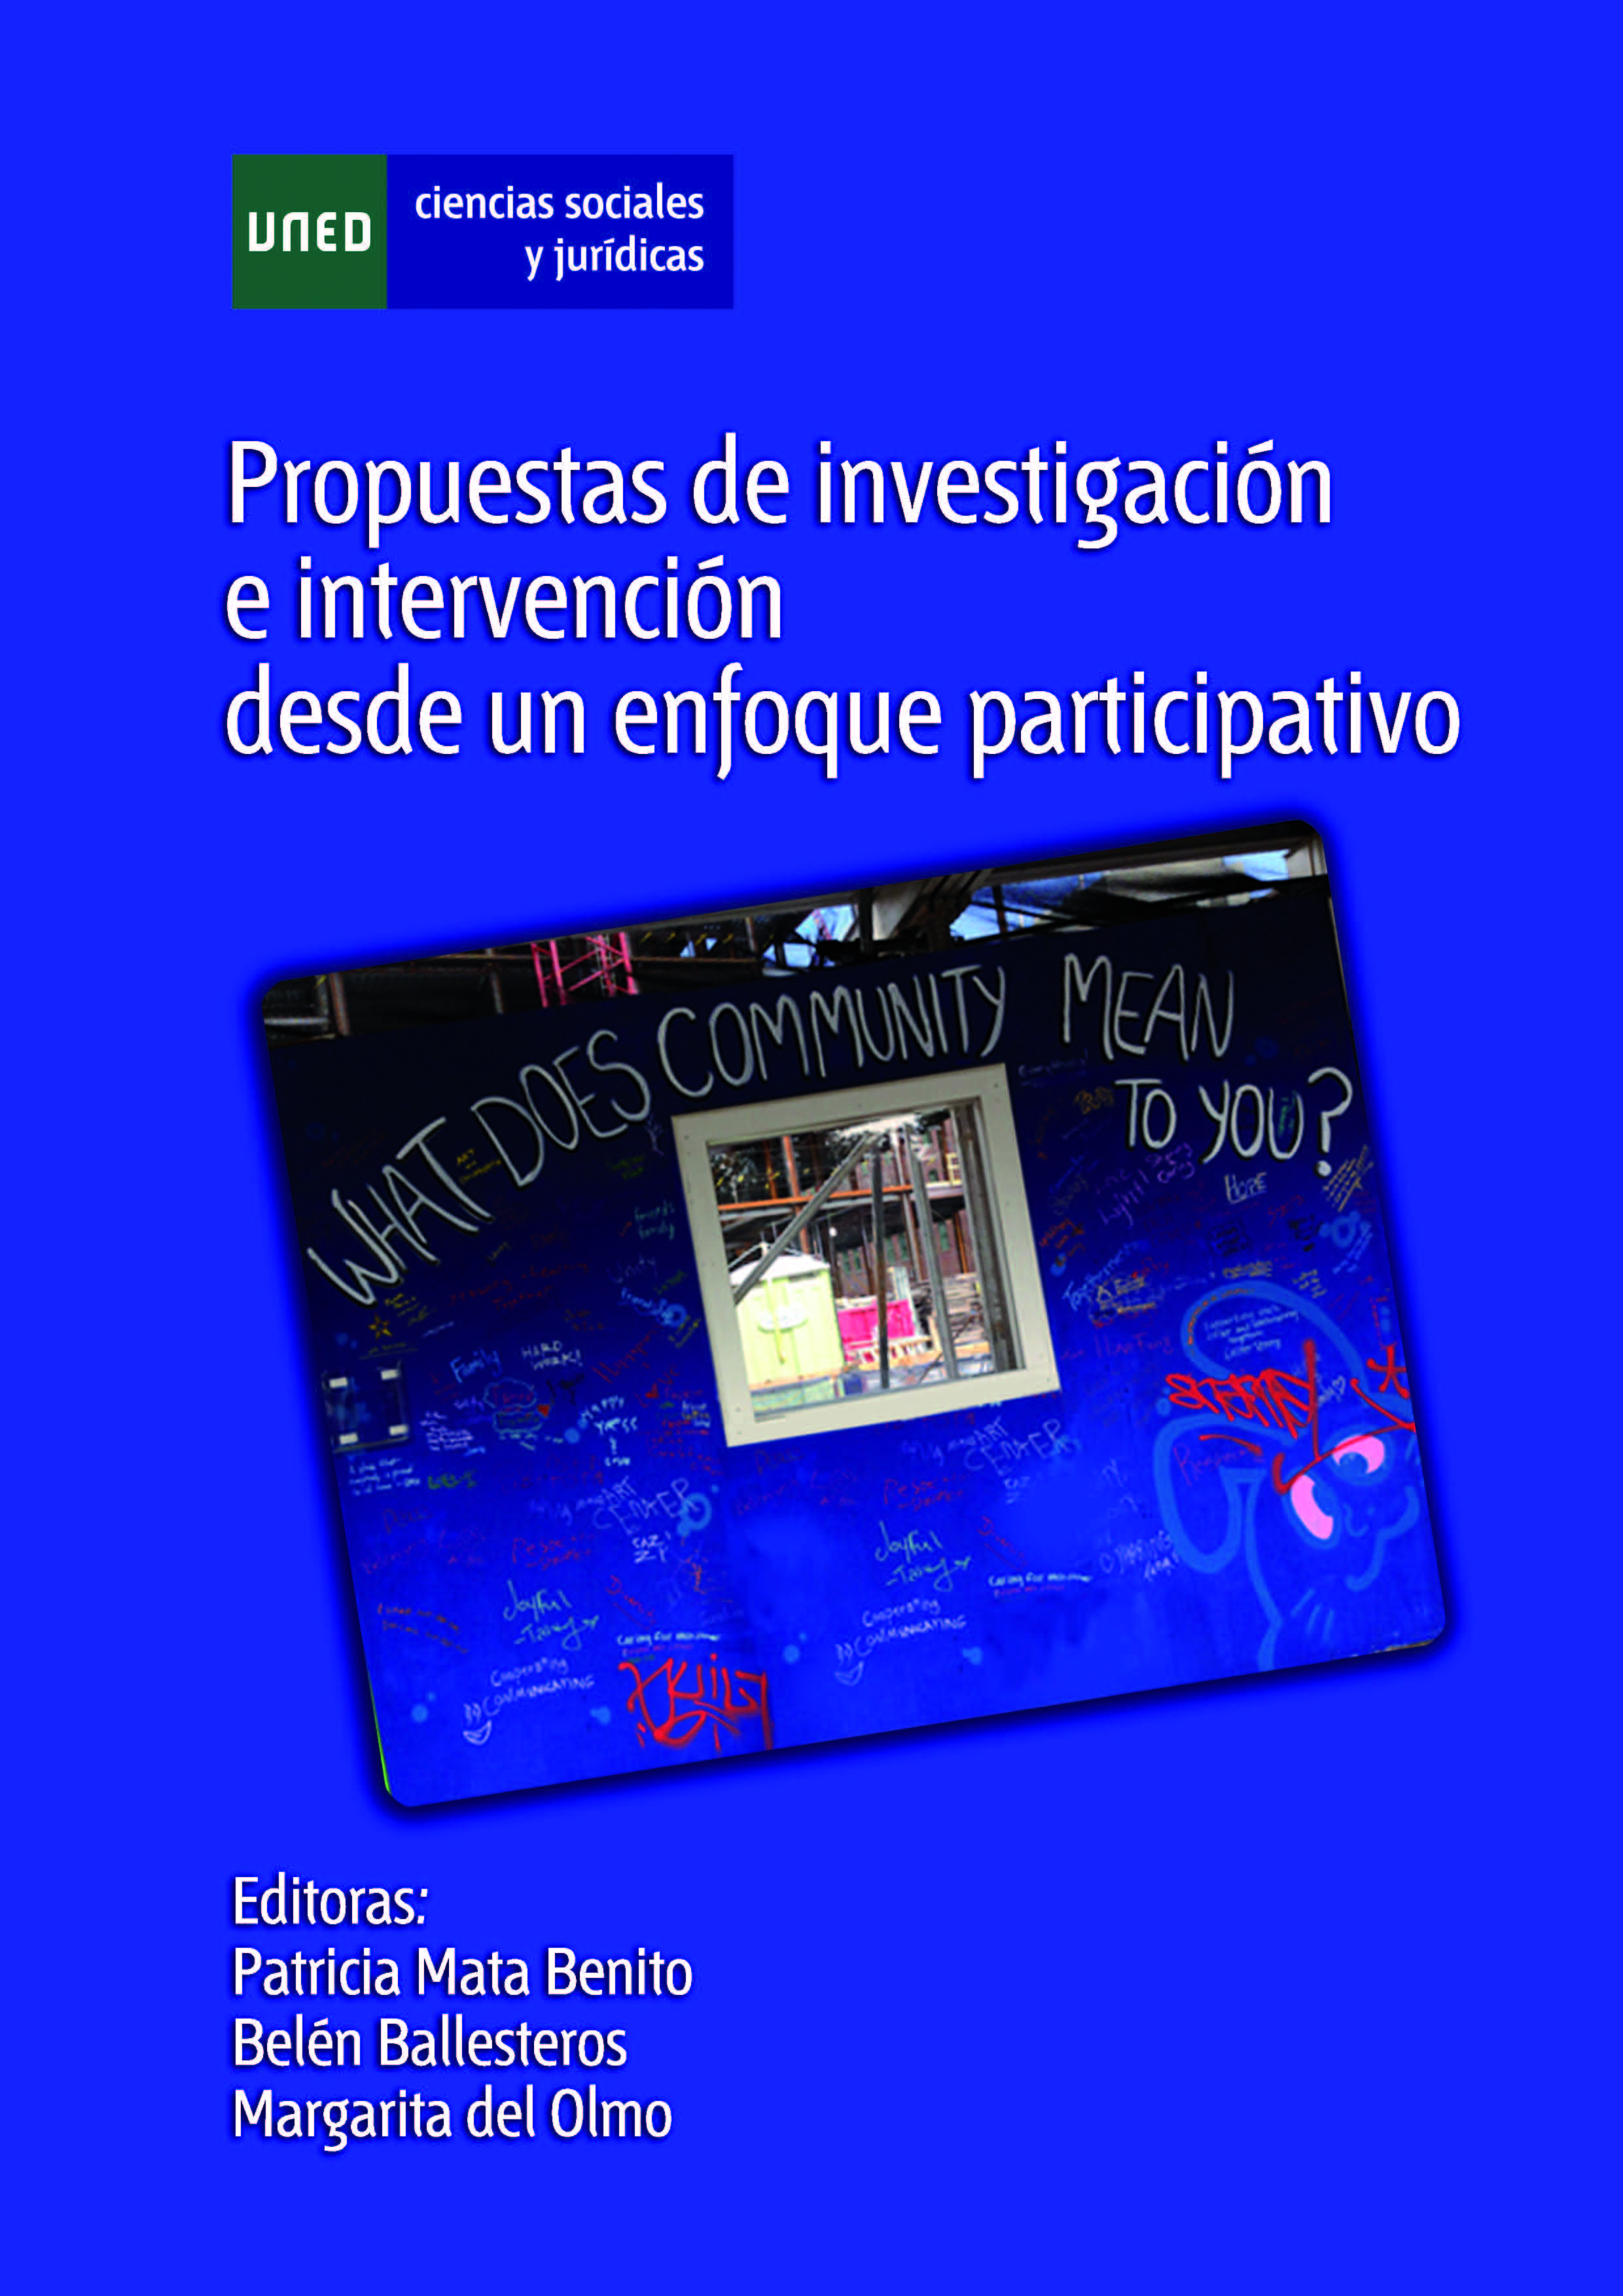 portada_propuestas_investigacion_interv_participativa_uned_14